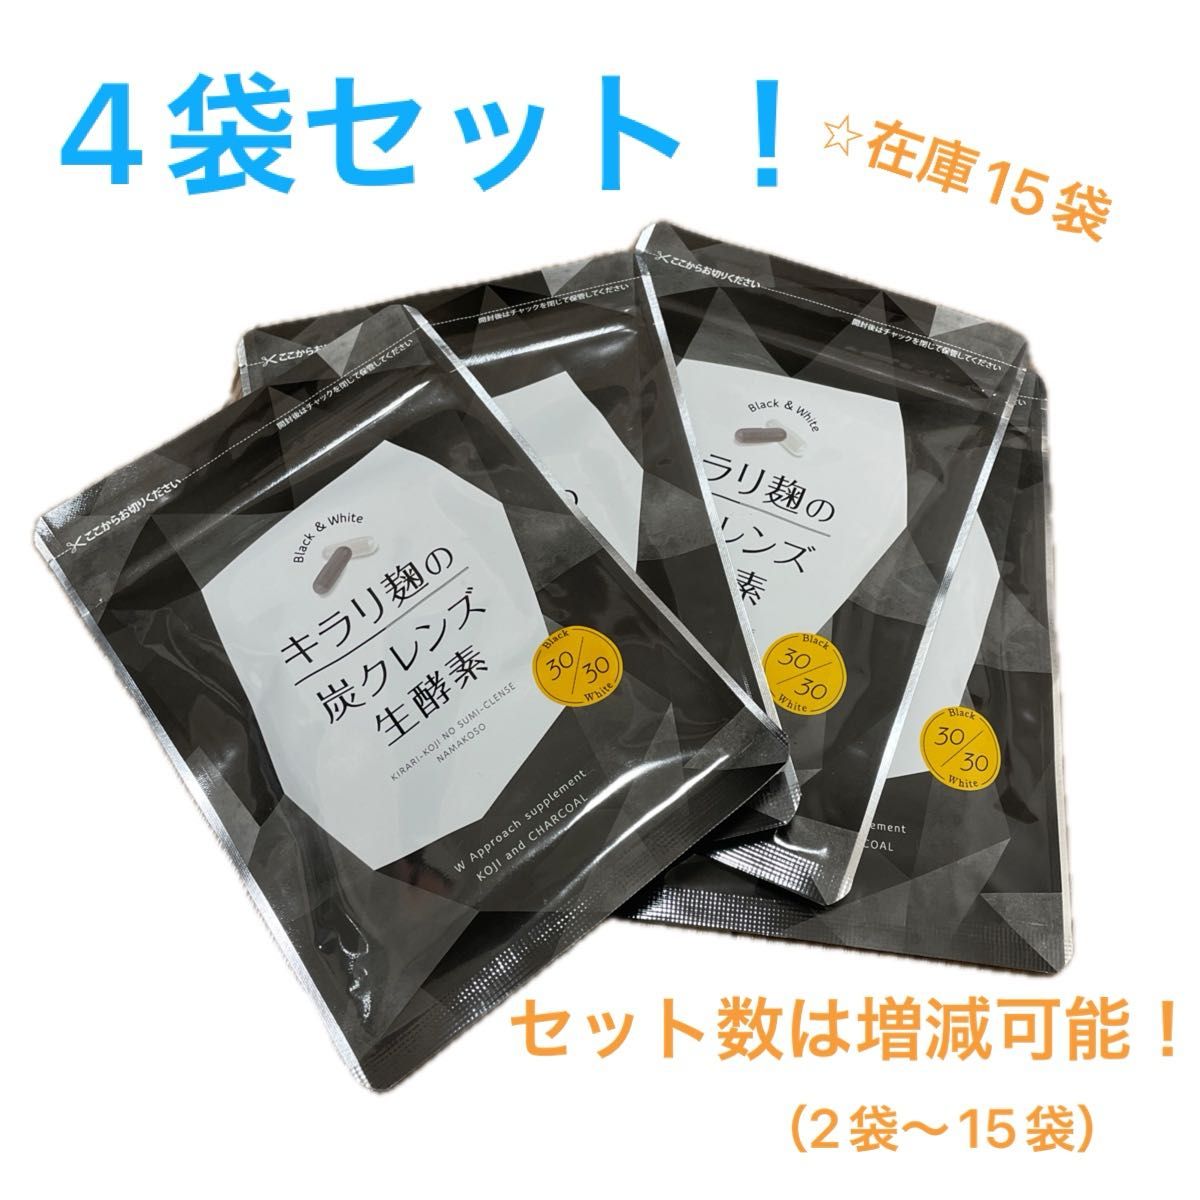 【4袋セット】酵素 サプリ ダイエット 炭 麹 キラリ麹の炭クレンズ生酵素 60粒